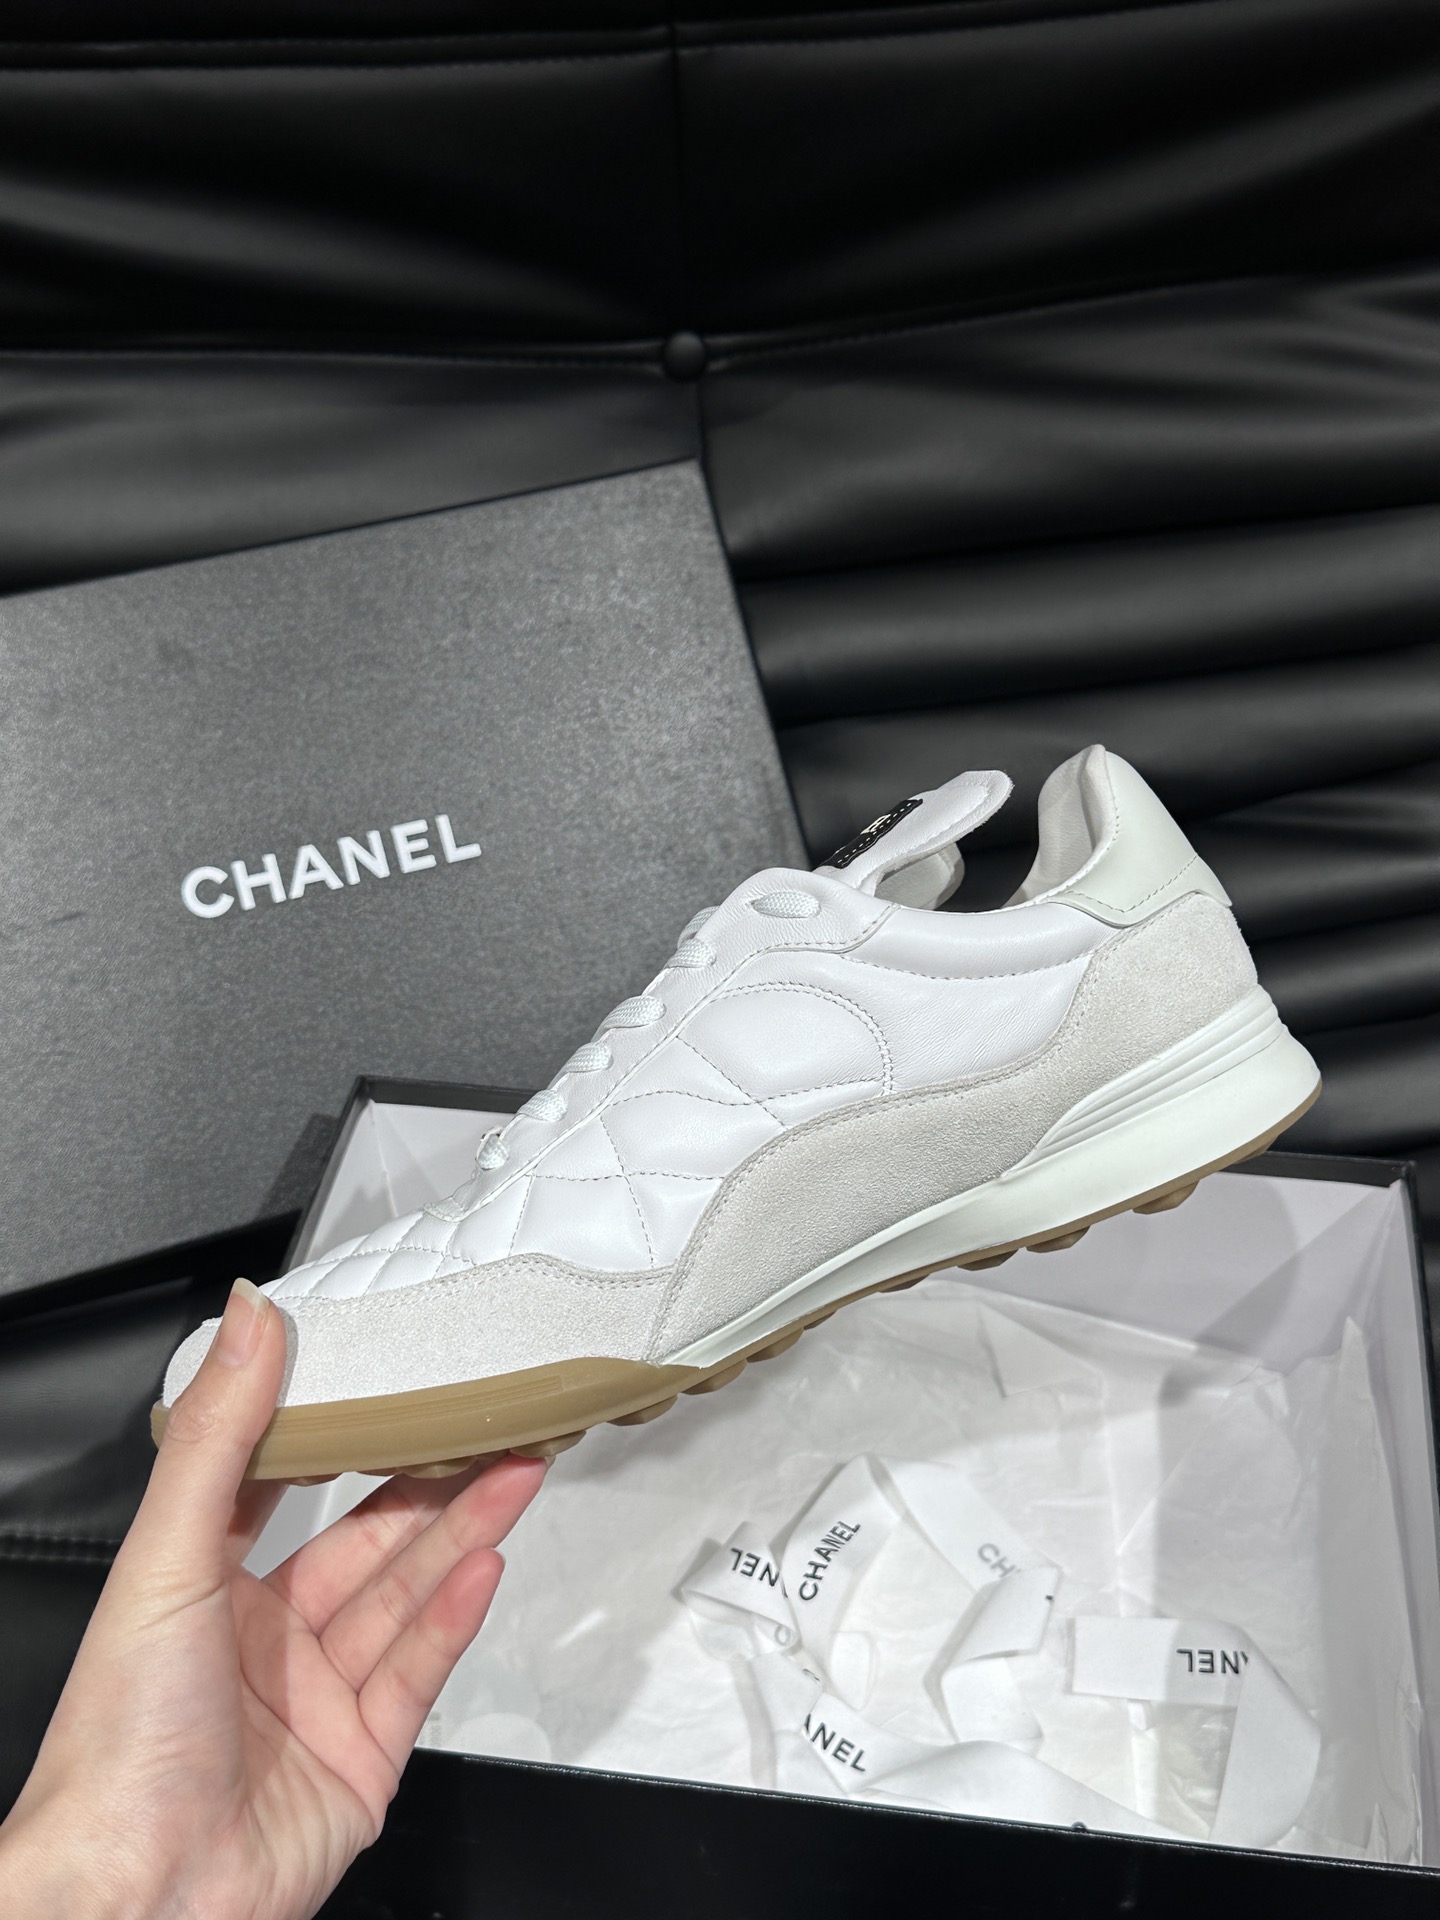 CHANEL香奈尔男士休闲运动小白鞋明星同款CHANEL24S棒球鞋采用菱格纹设计小牛皮和麂皮鞋面轻盈柔